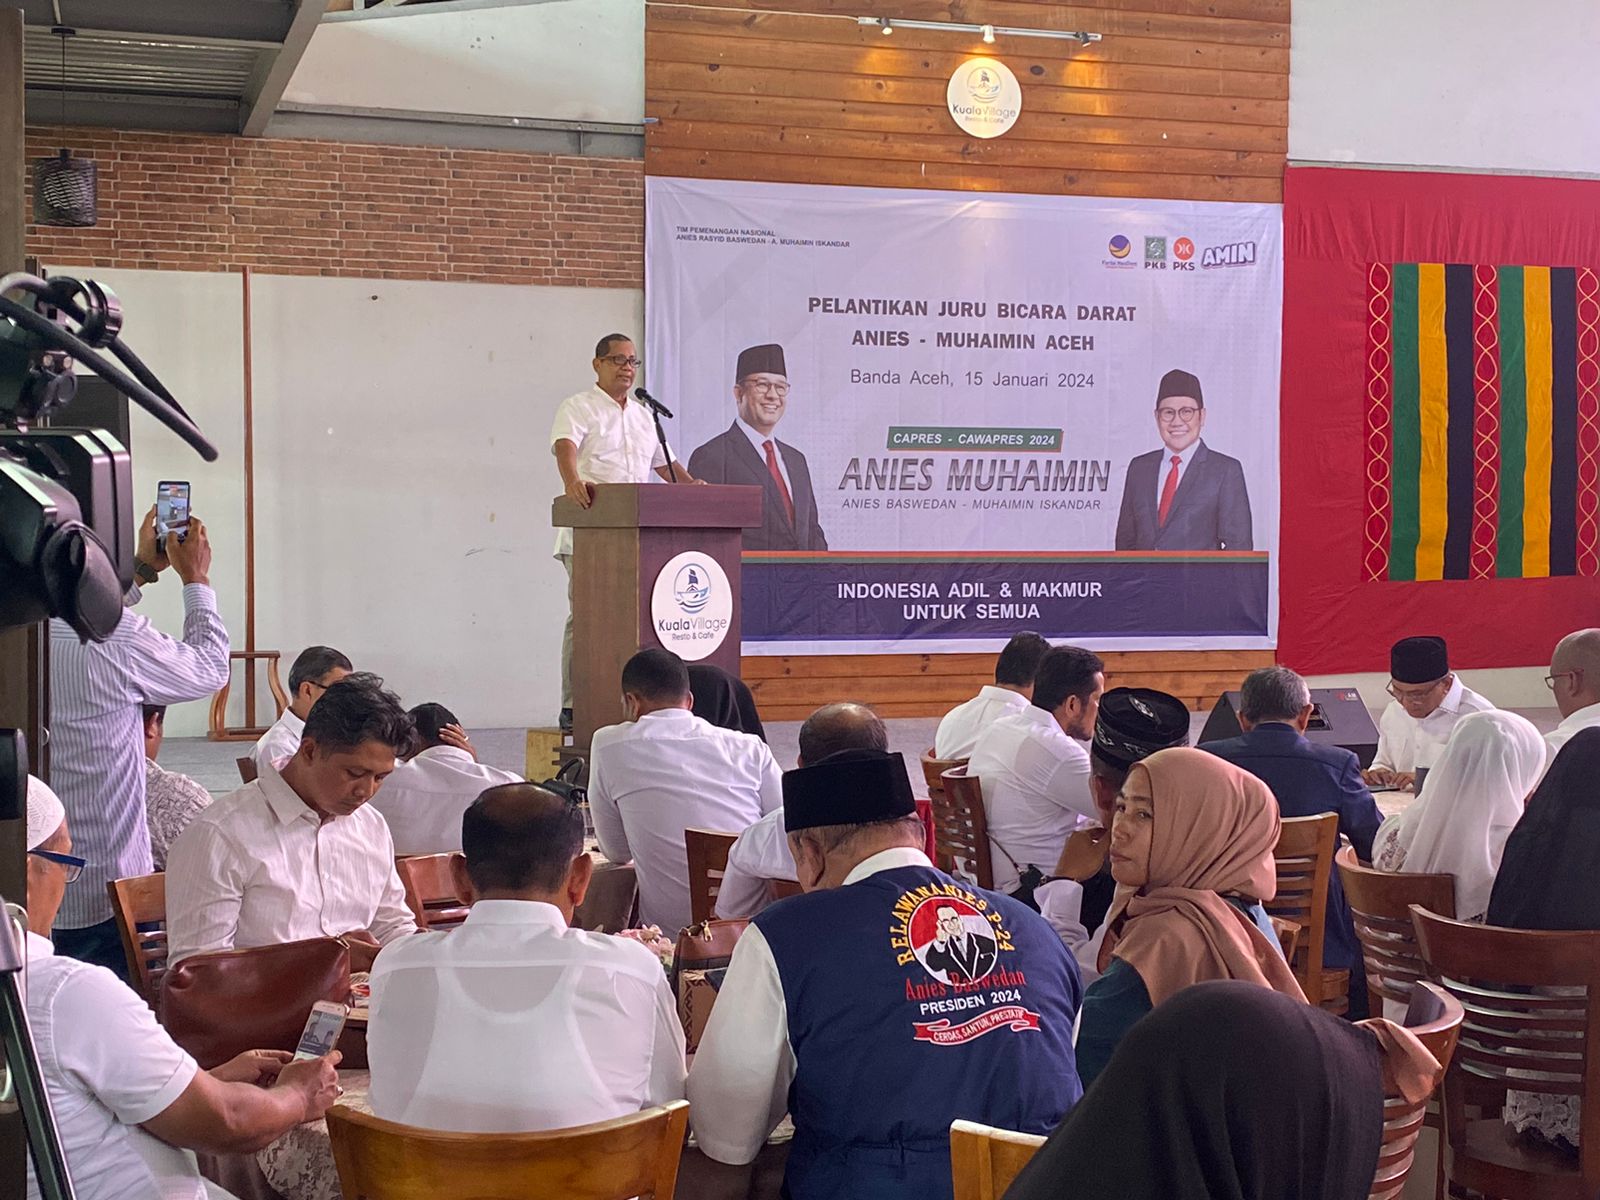  159 Jubir Darat  AMIN Provinsi Aceh Dilantik, Perkuat Kesadaran Politik Perubahan Rakyat Aceh